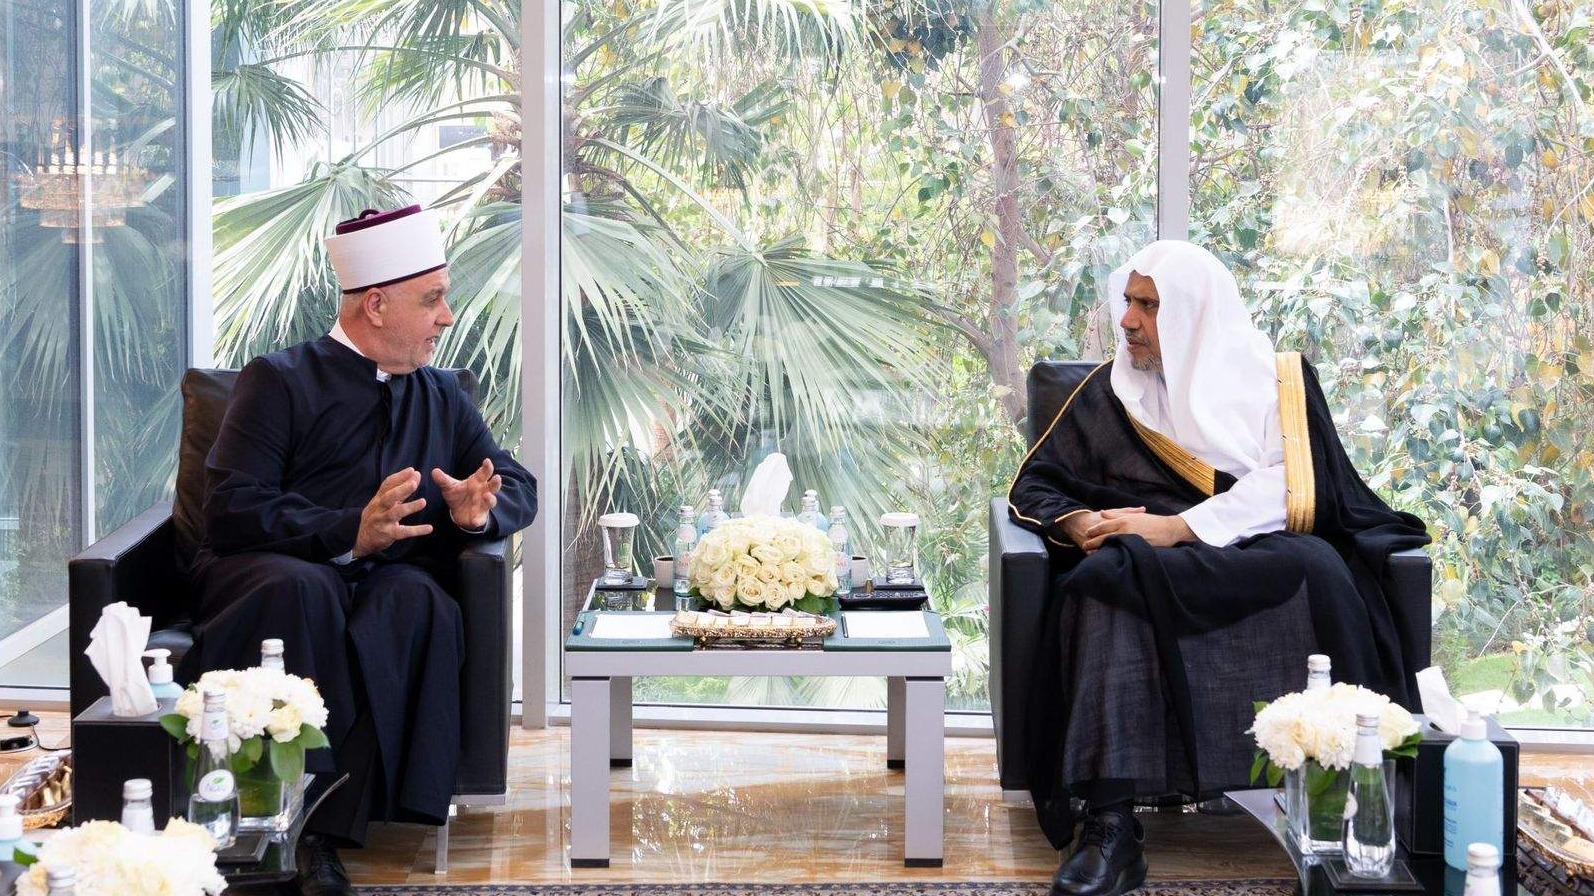 Rijad: Reisul-ulema posjetio generalnog sekretara Lige muslimanskog svijeta